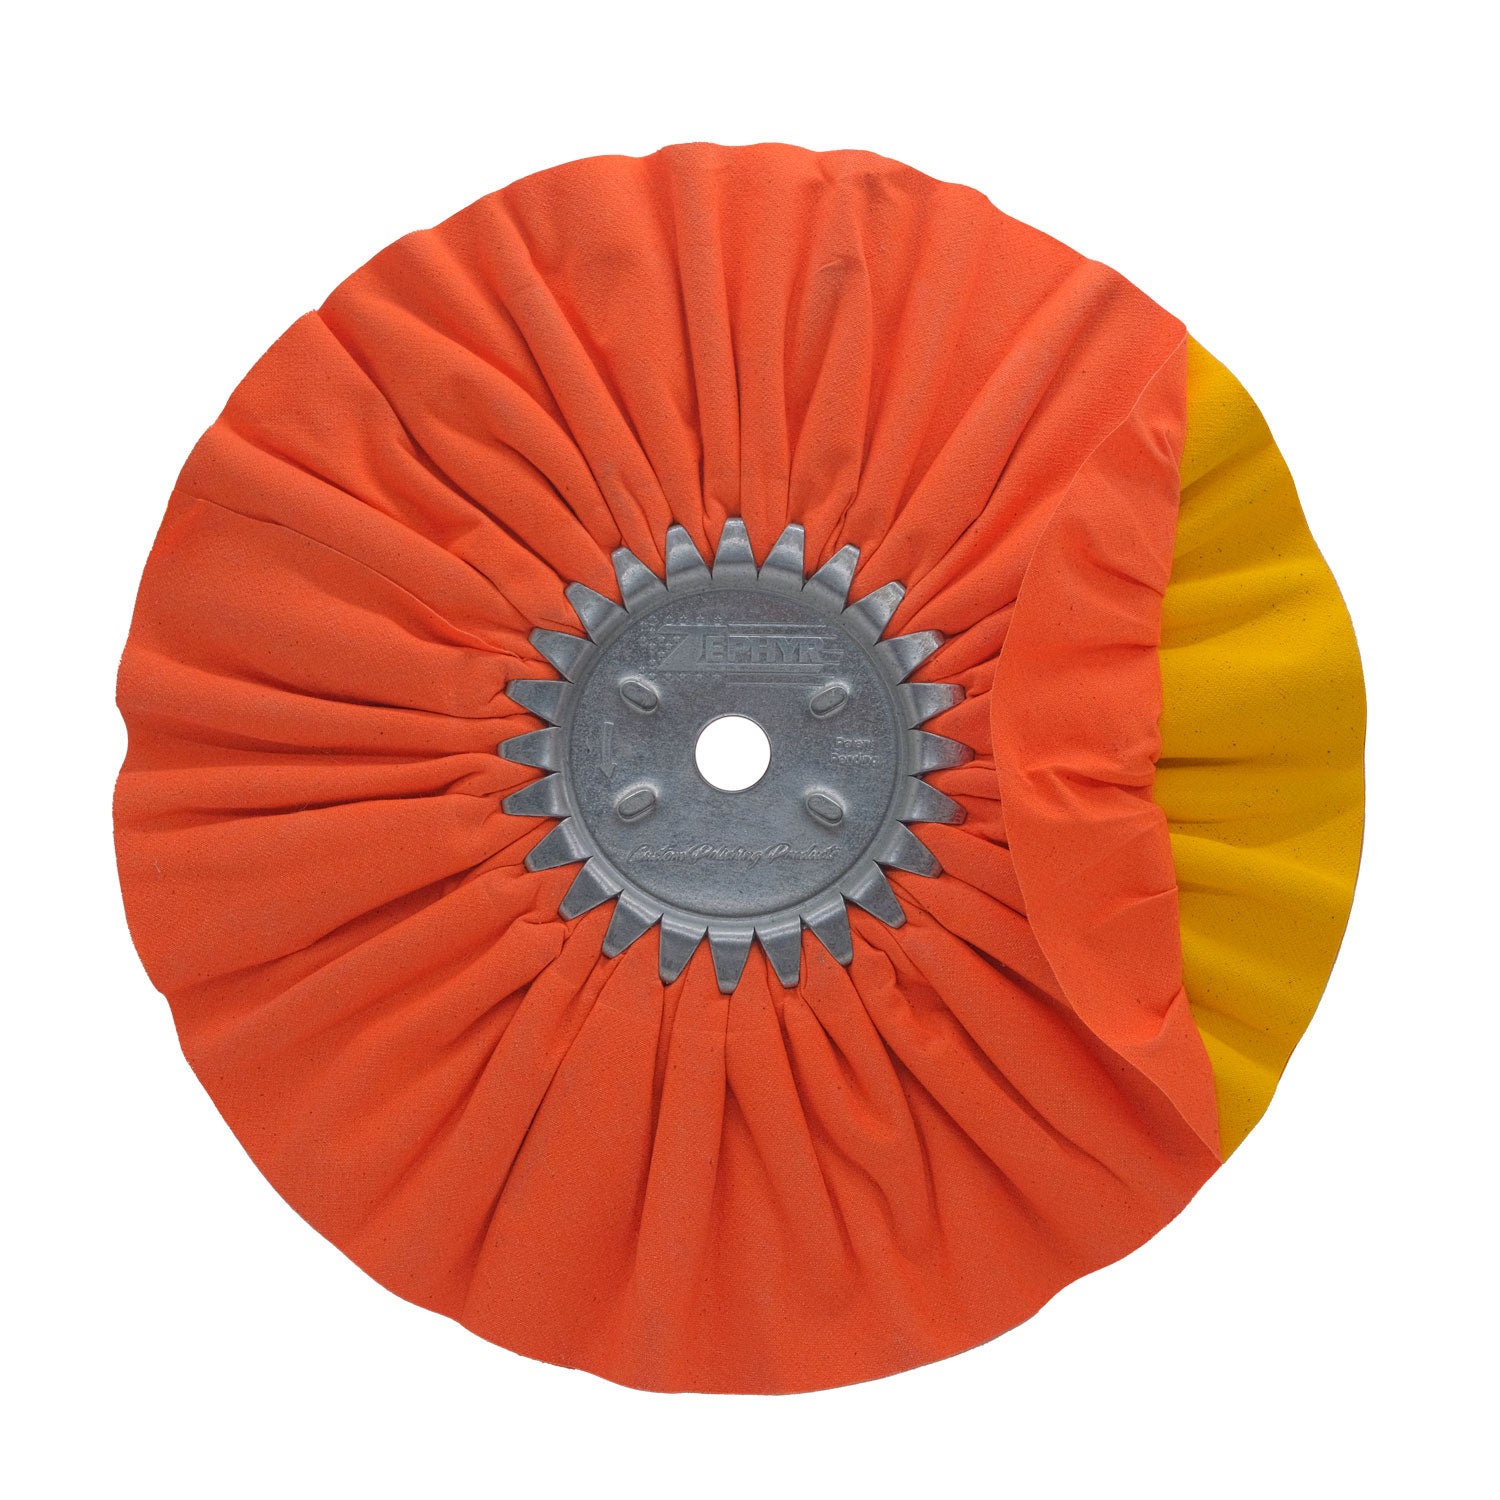 10 Airway Buffing Wheels for Polishing 3 inch / 5/8 inch / Orange